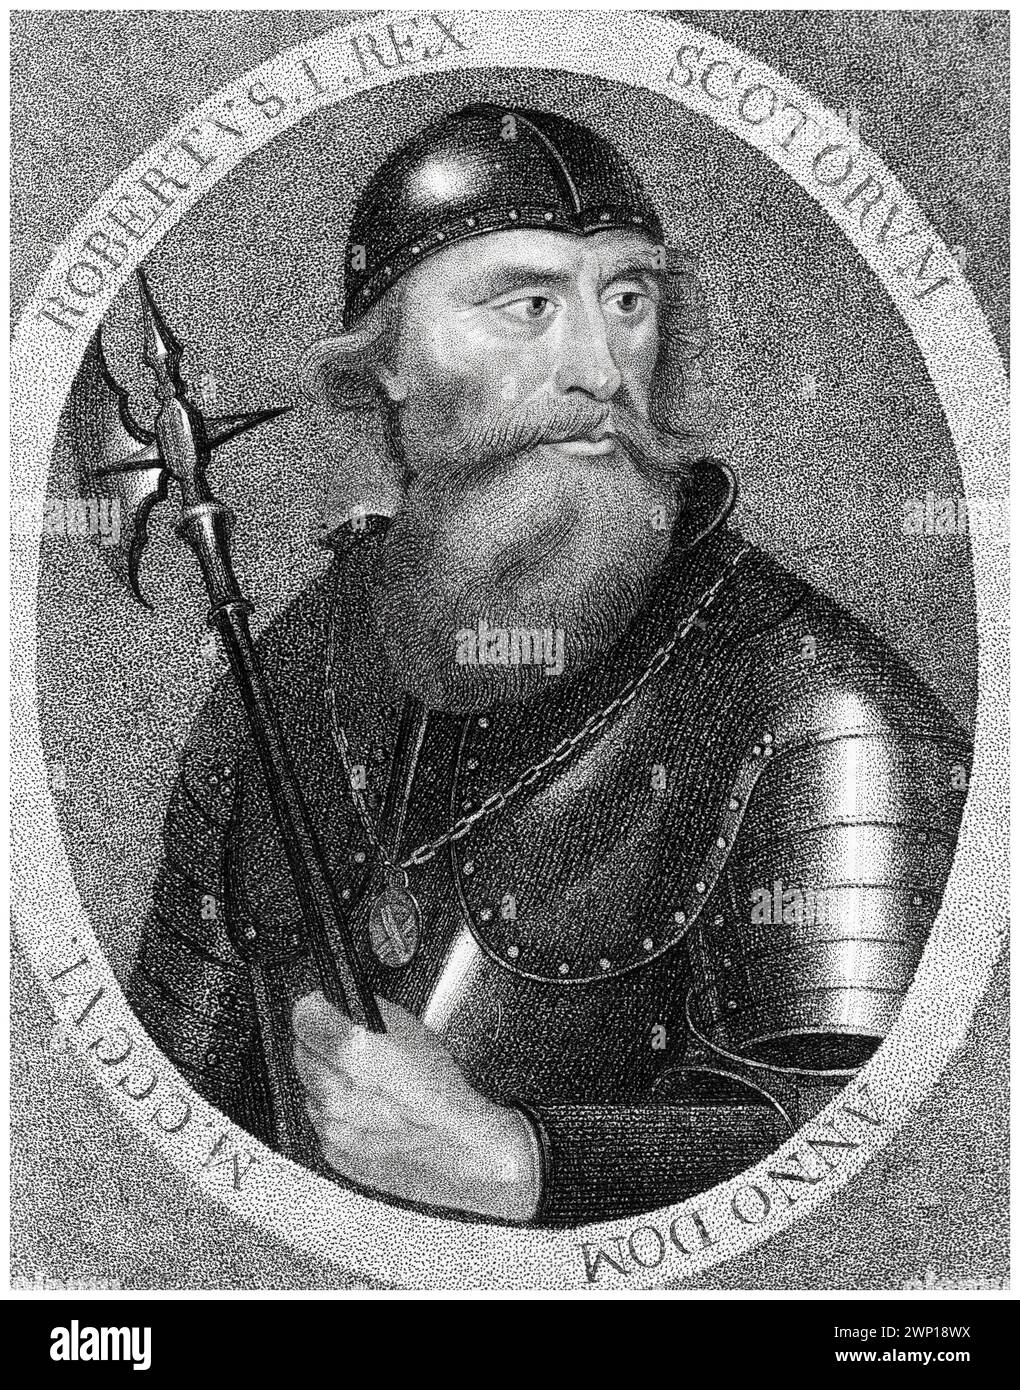 Roberto i di Scozia (1274-1329) noto come Robert the Bruce, re di Scozia 1306-1329, incisione ritratto di Edward Harding dopo Jamesson, 1797 Foto Stock